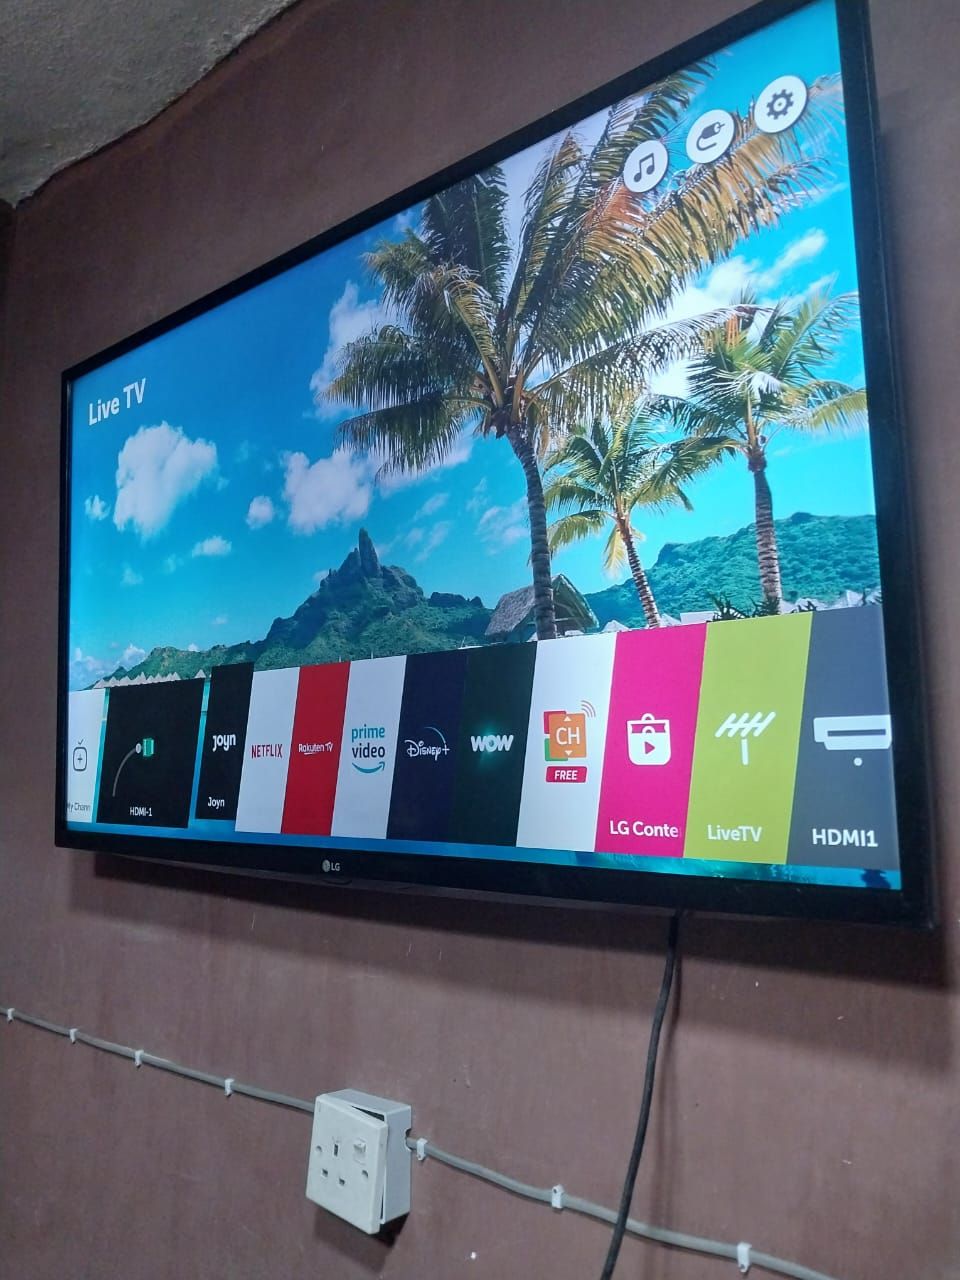 LG Smart TV 43 Inch, Electronics